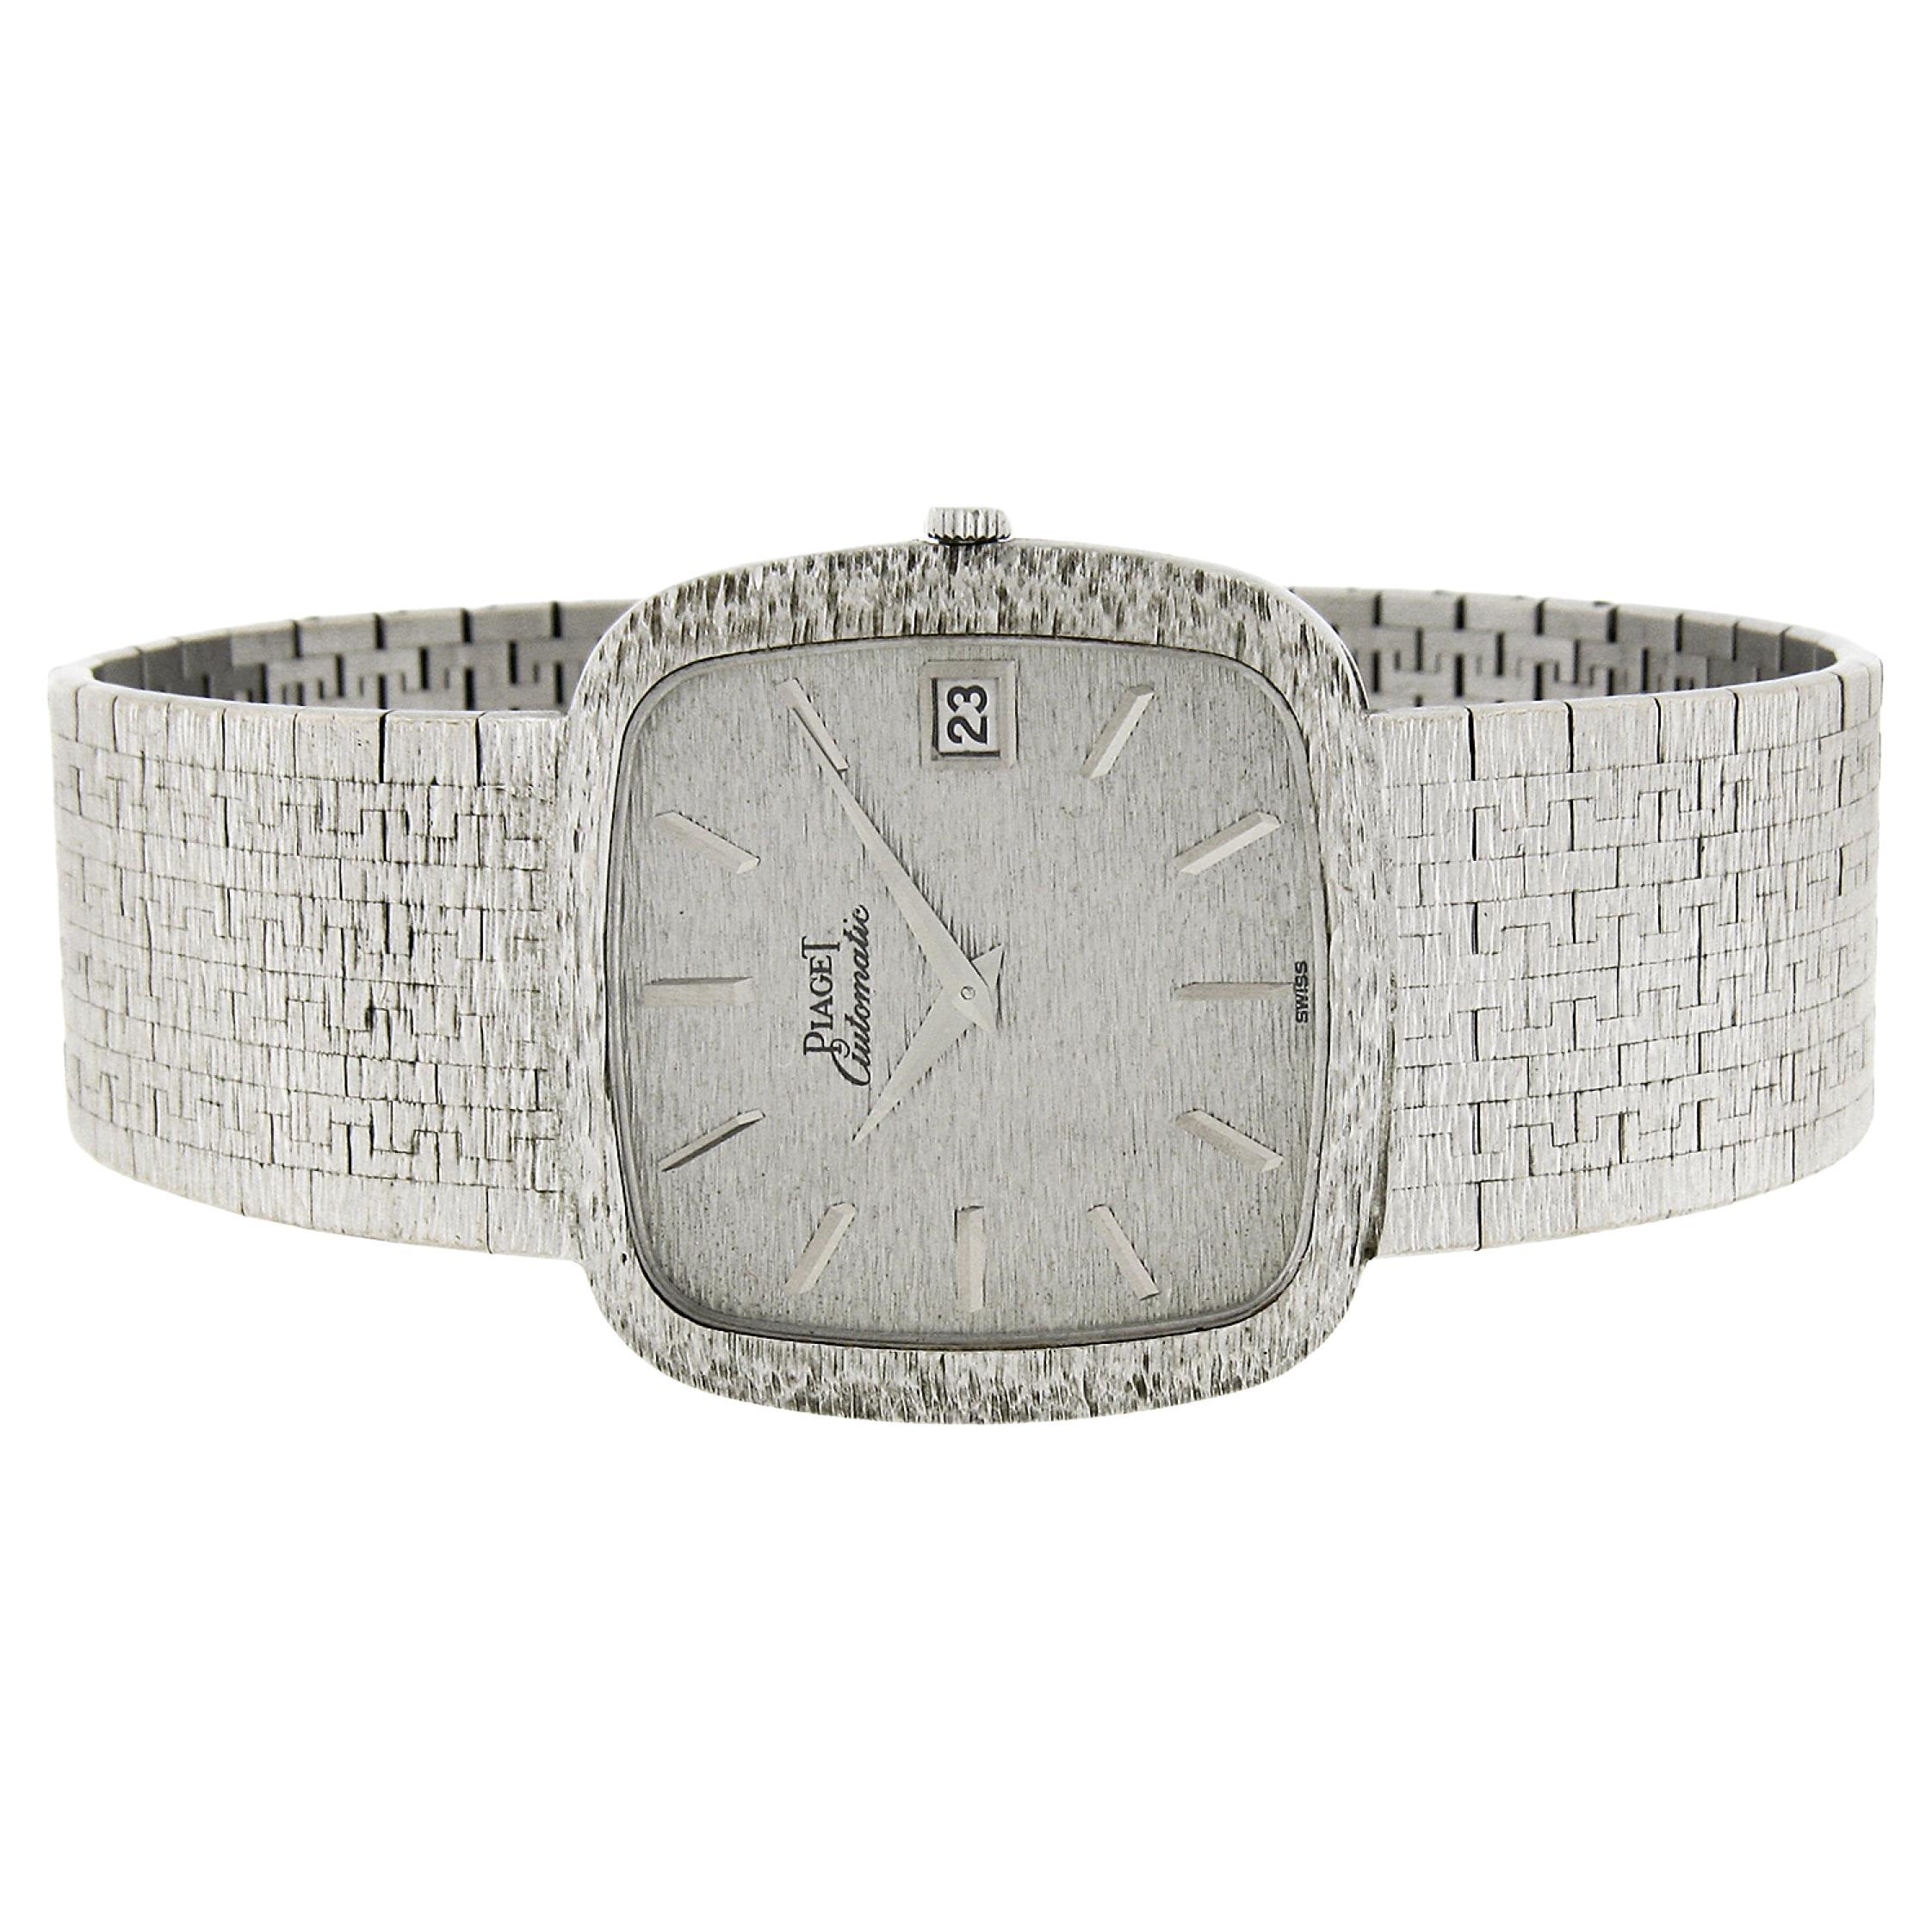 Vintage Piaget Automatic 18k Gold 32mm Cushion Texture Link Bracelet Wrist Watch